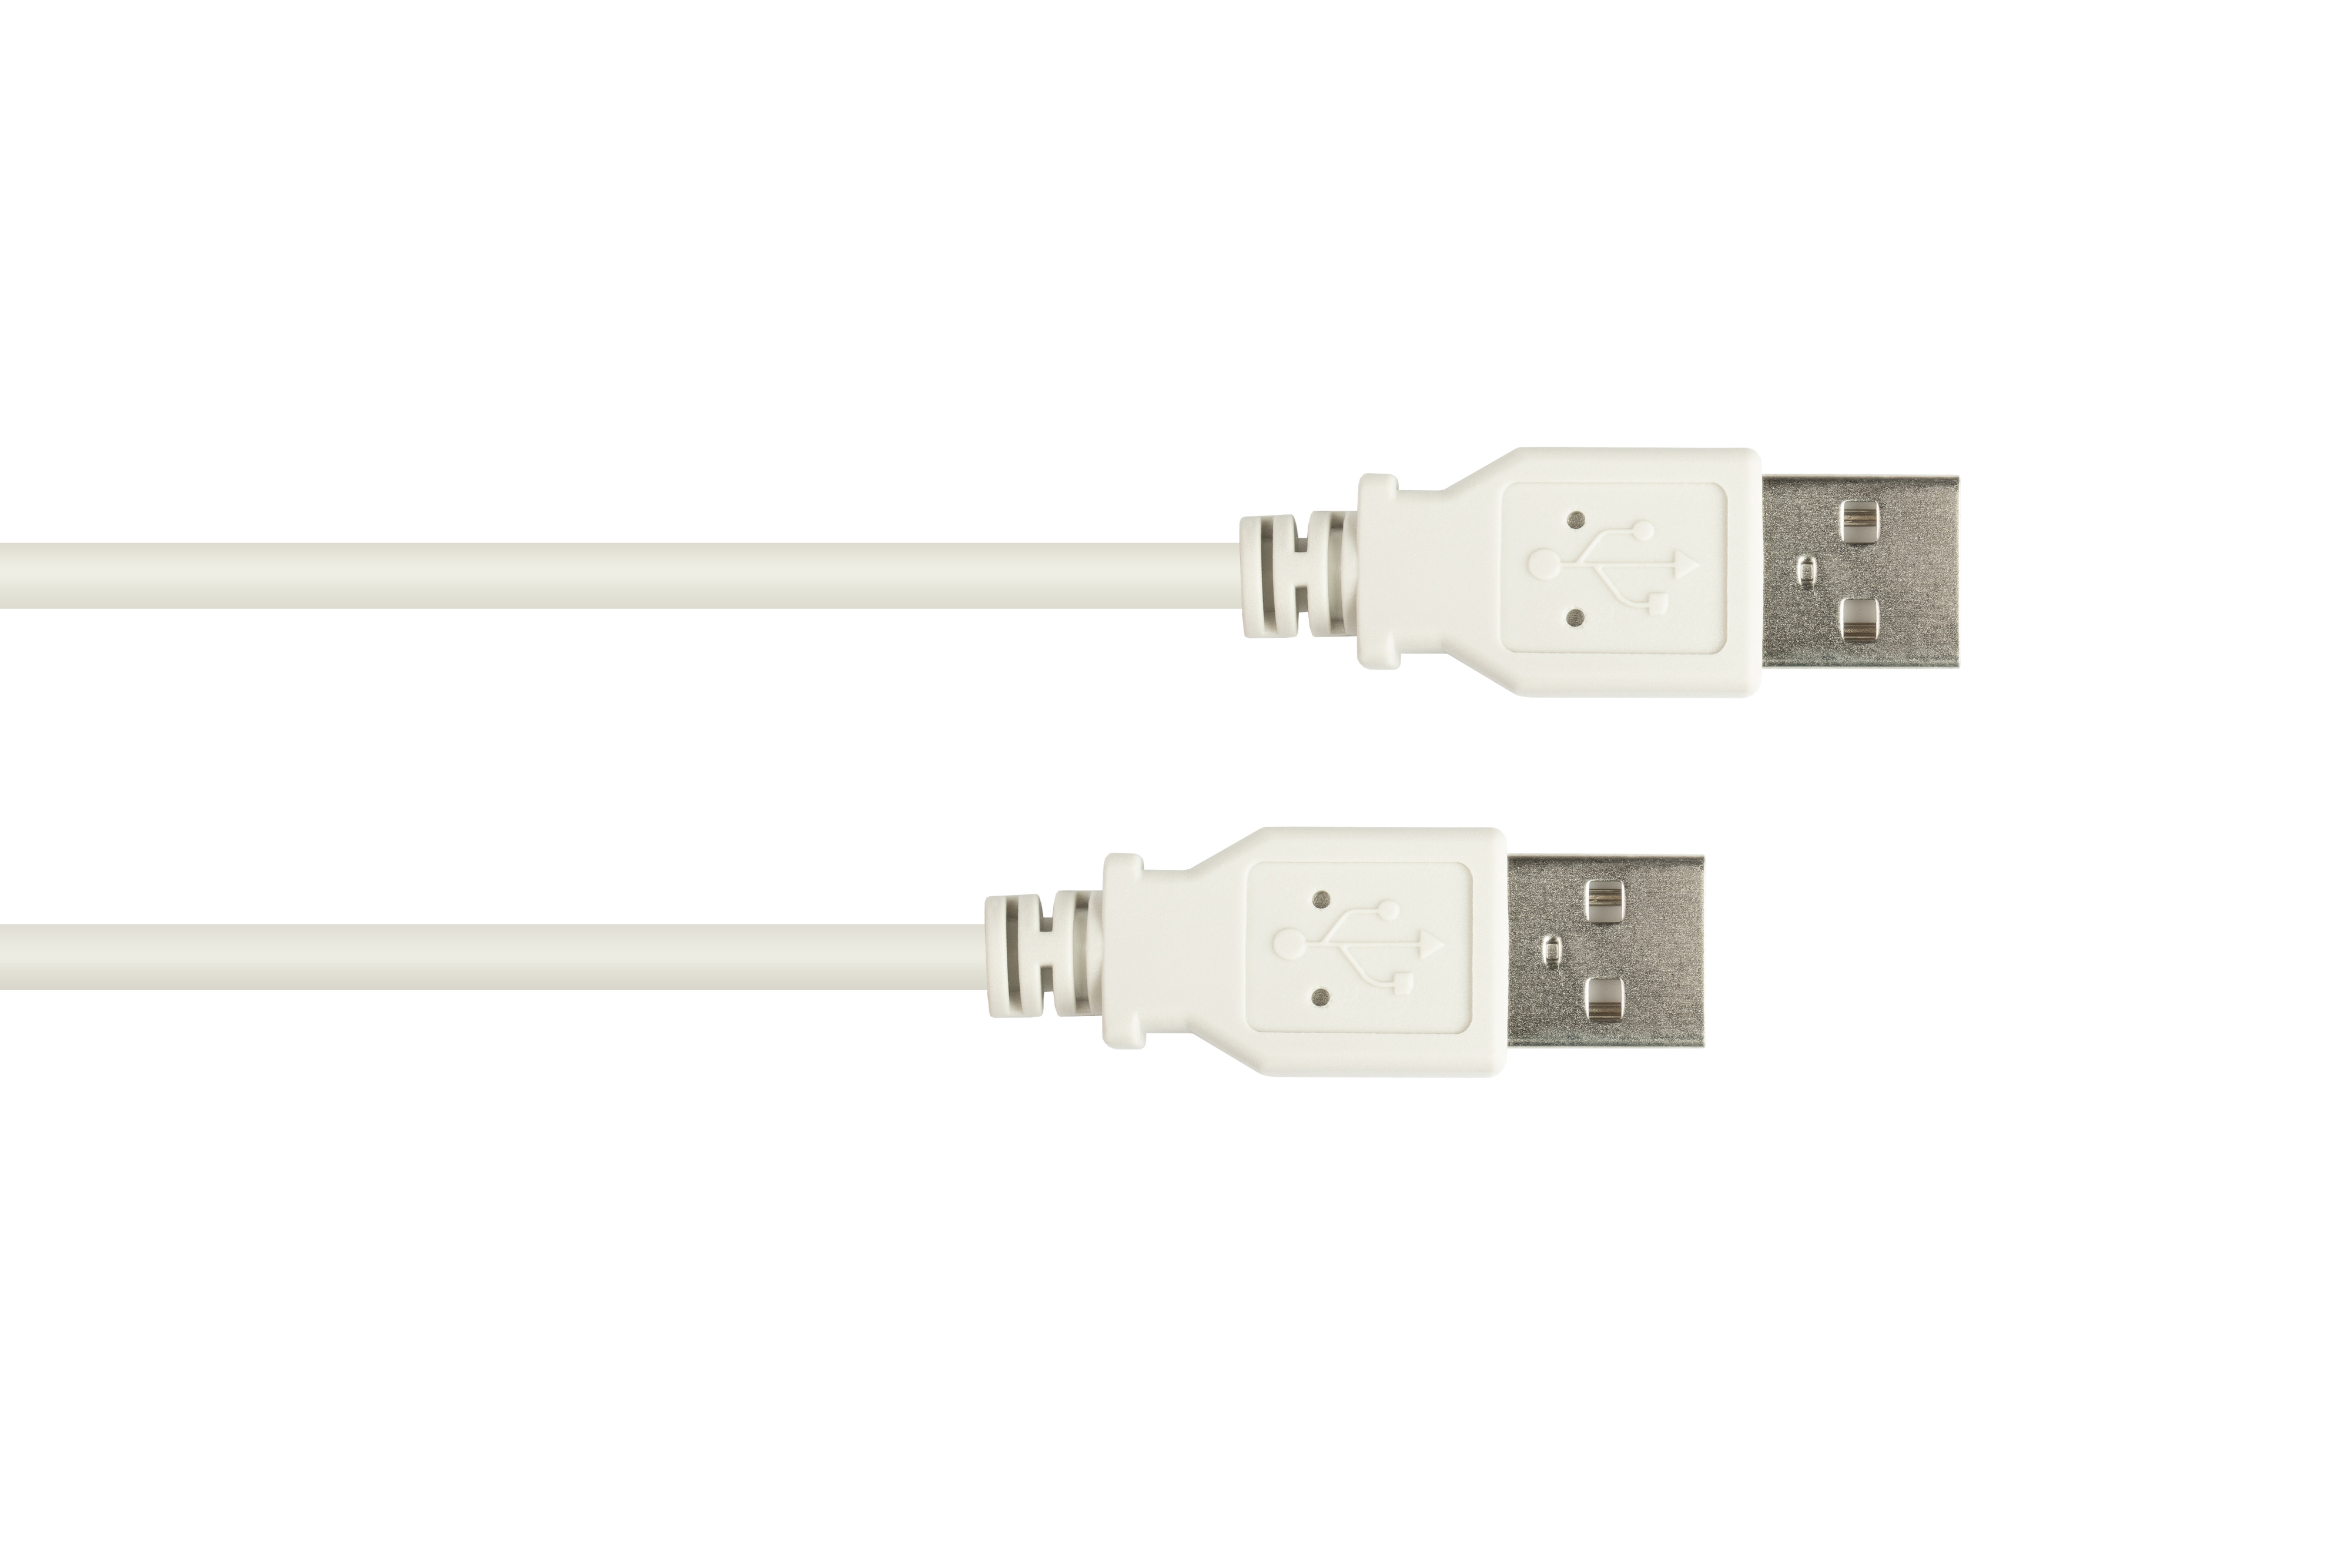 Stecker A, USB 2.0 A Stecker CONNECTIONS grau Anschlusskabel GOOD an